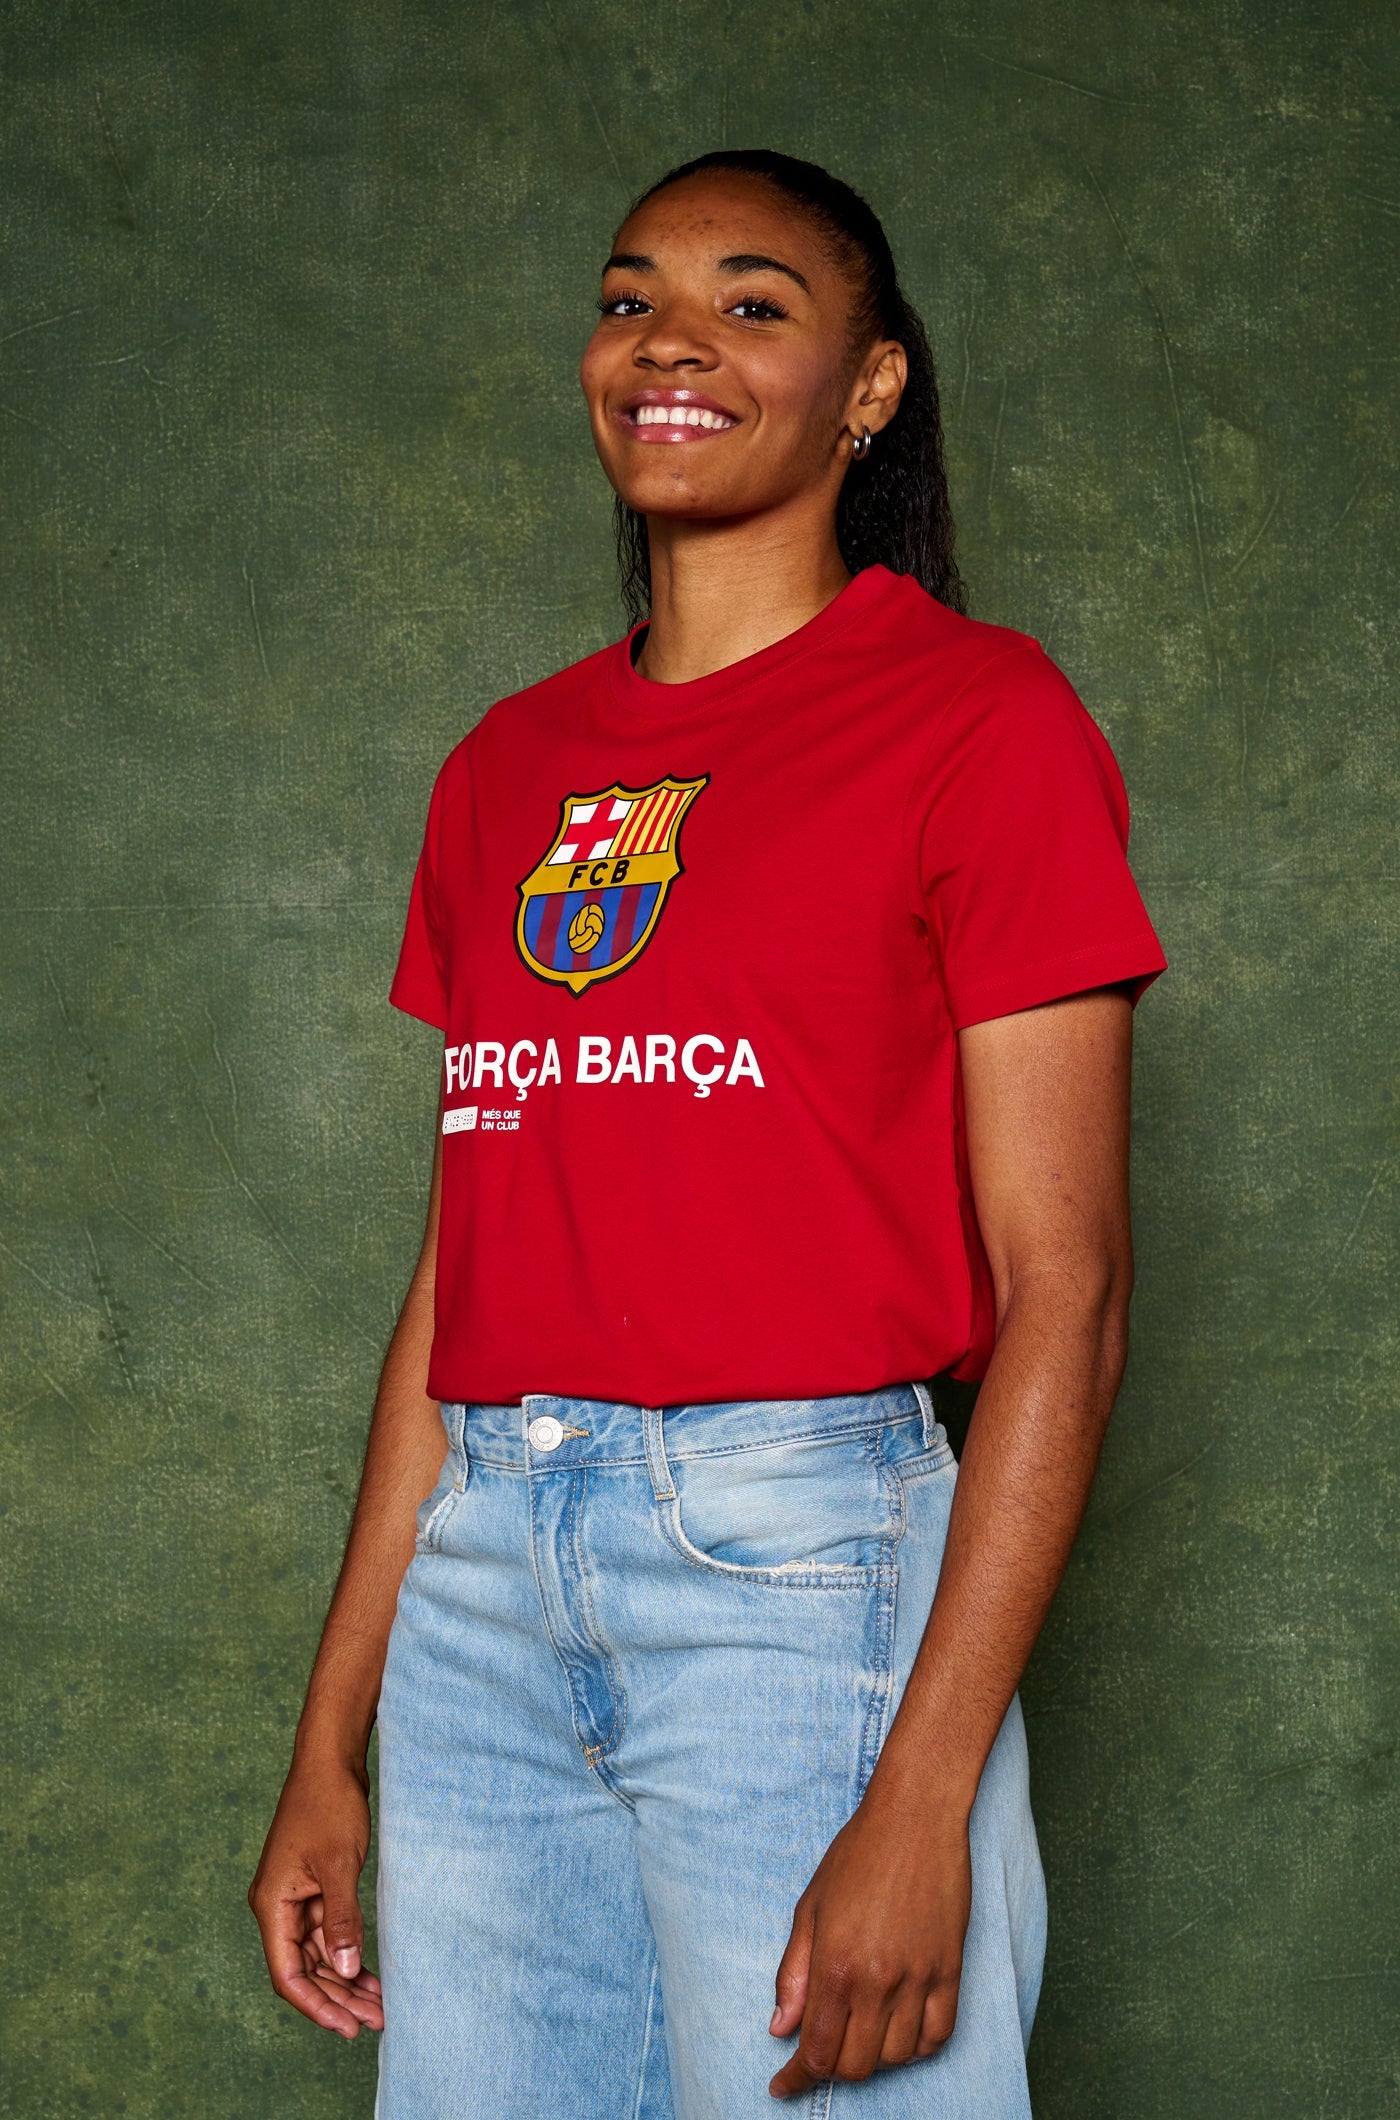 Camiseta roja Força Barça